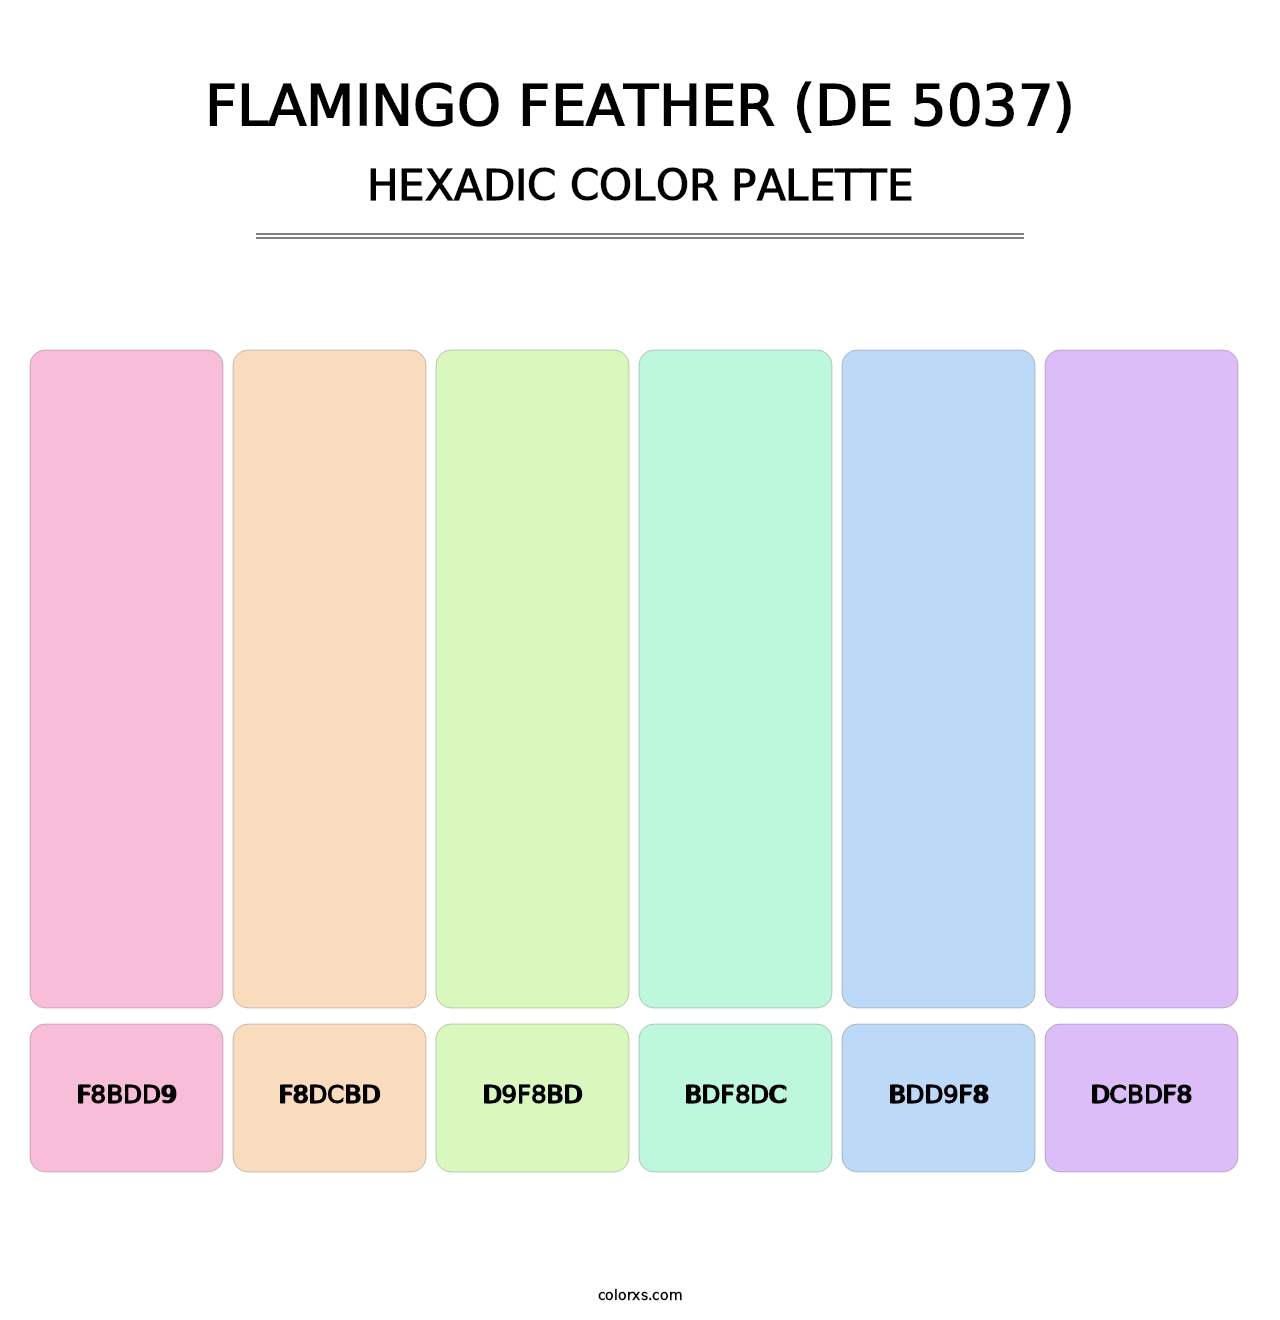 Flamingo Feather (DE 5037) - Hexadic Color Palette